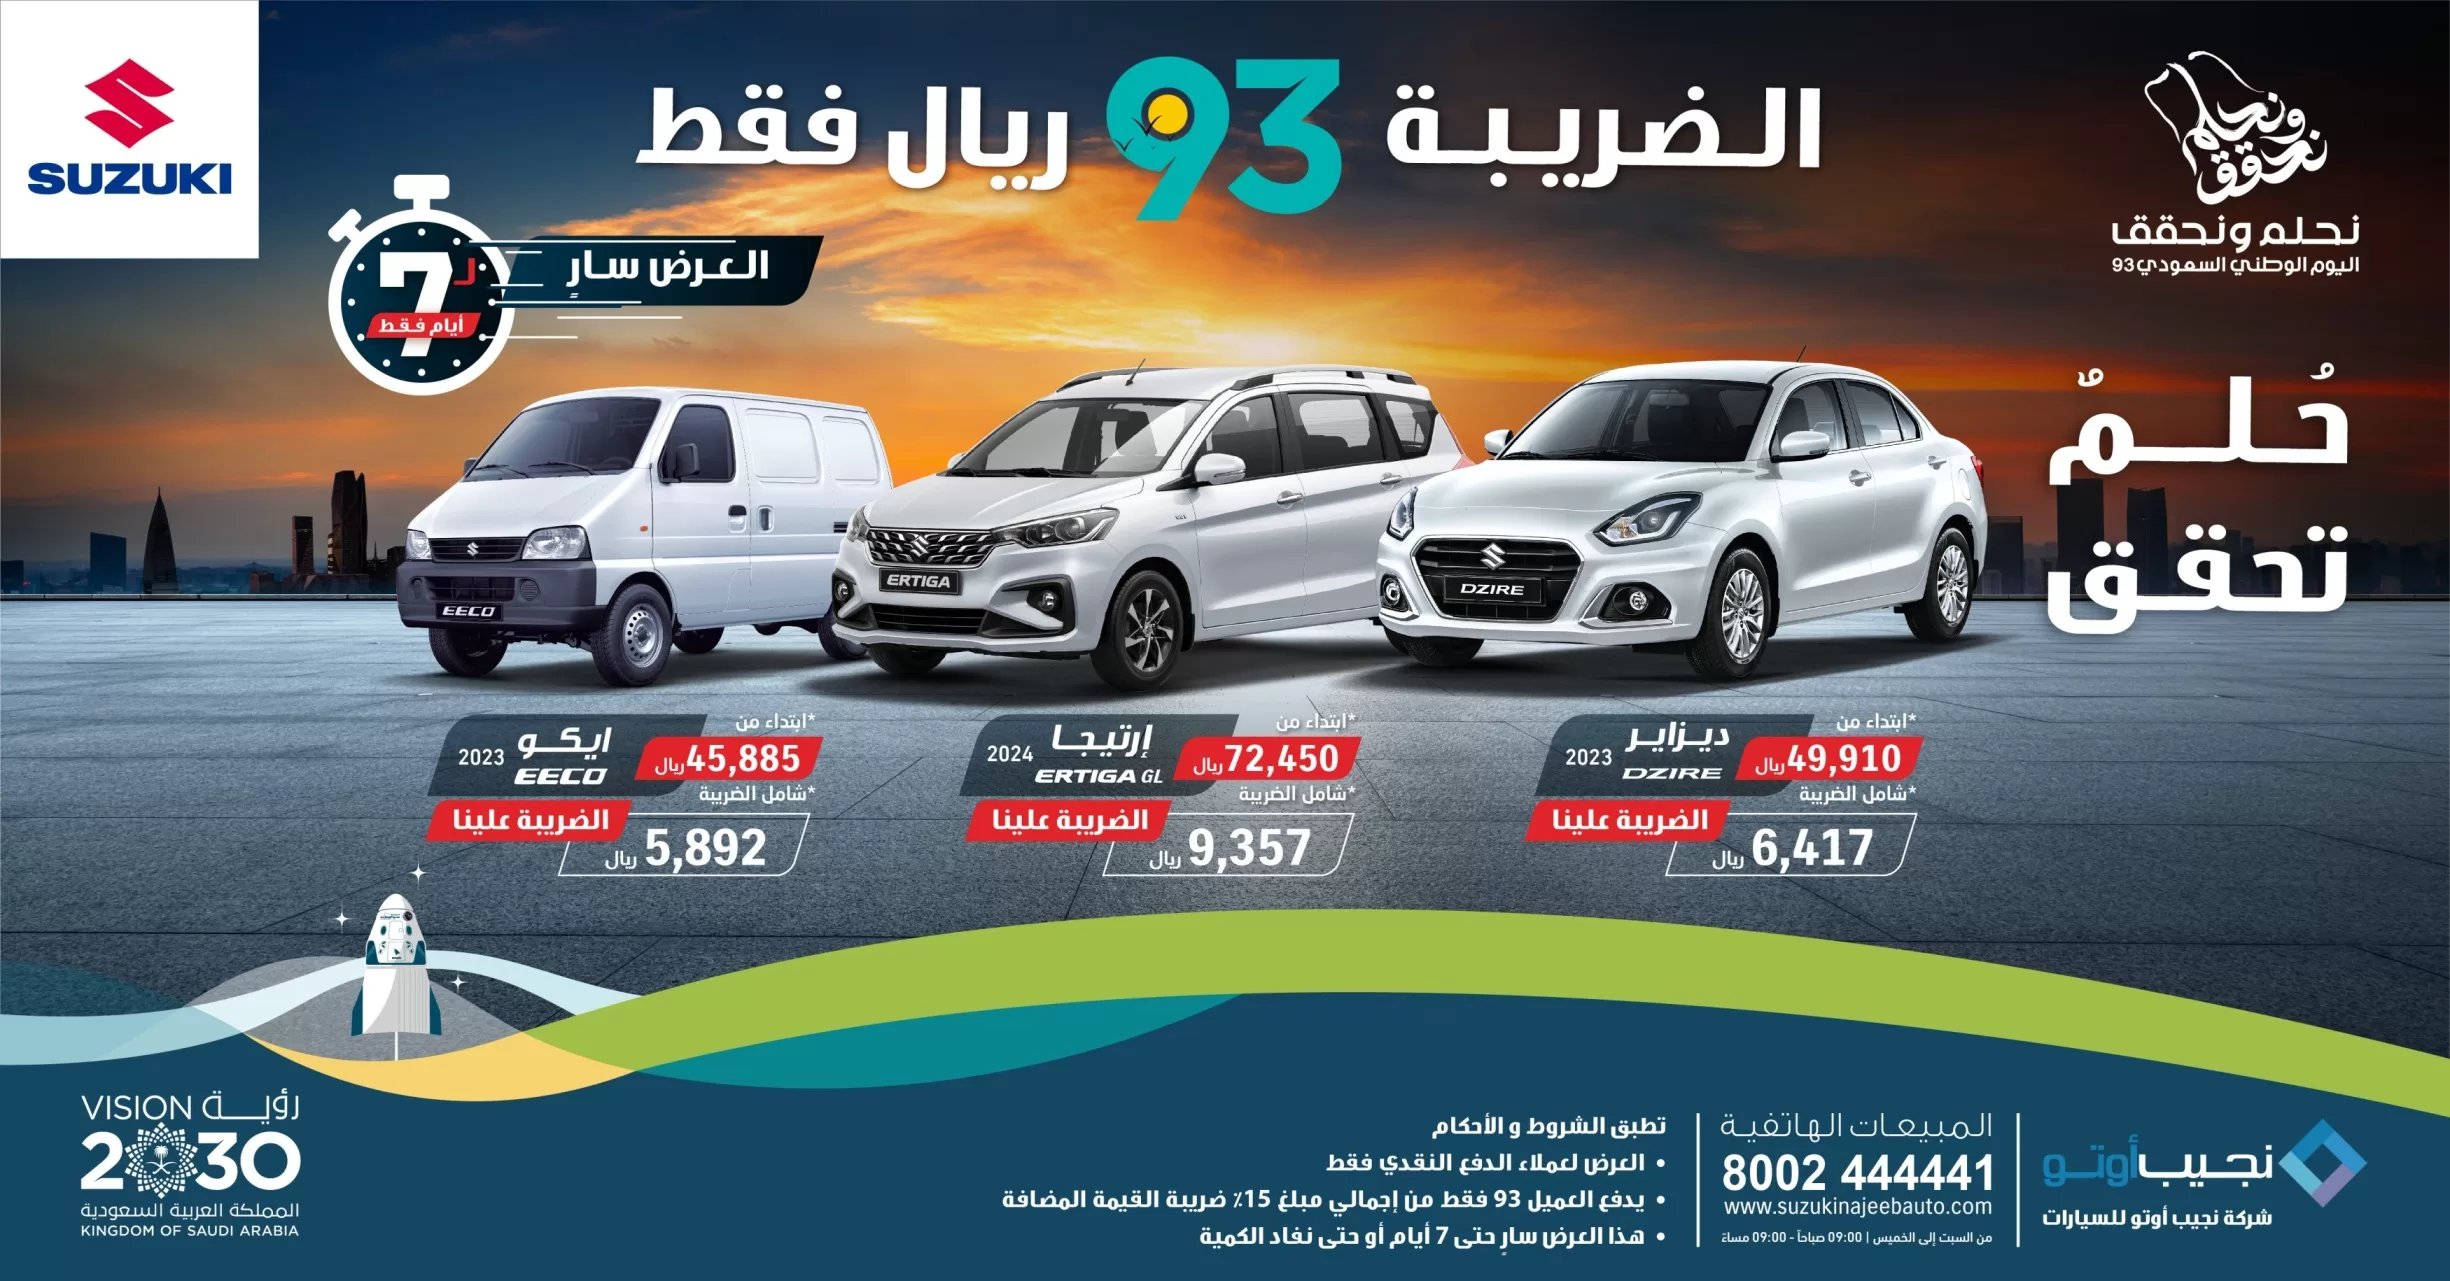 1503Desktop Image2 jpg - عروض نجيب أوتو لسيارات سوزوكي في اليوم الوطني السعودي: بضريبة 93 ريال فقط!